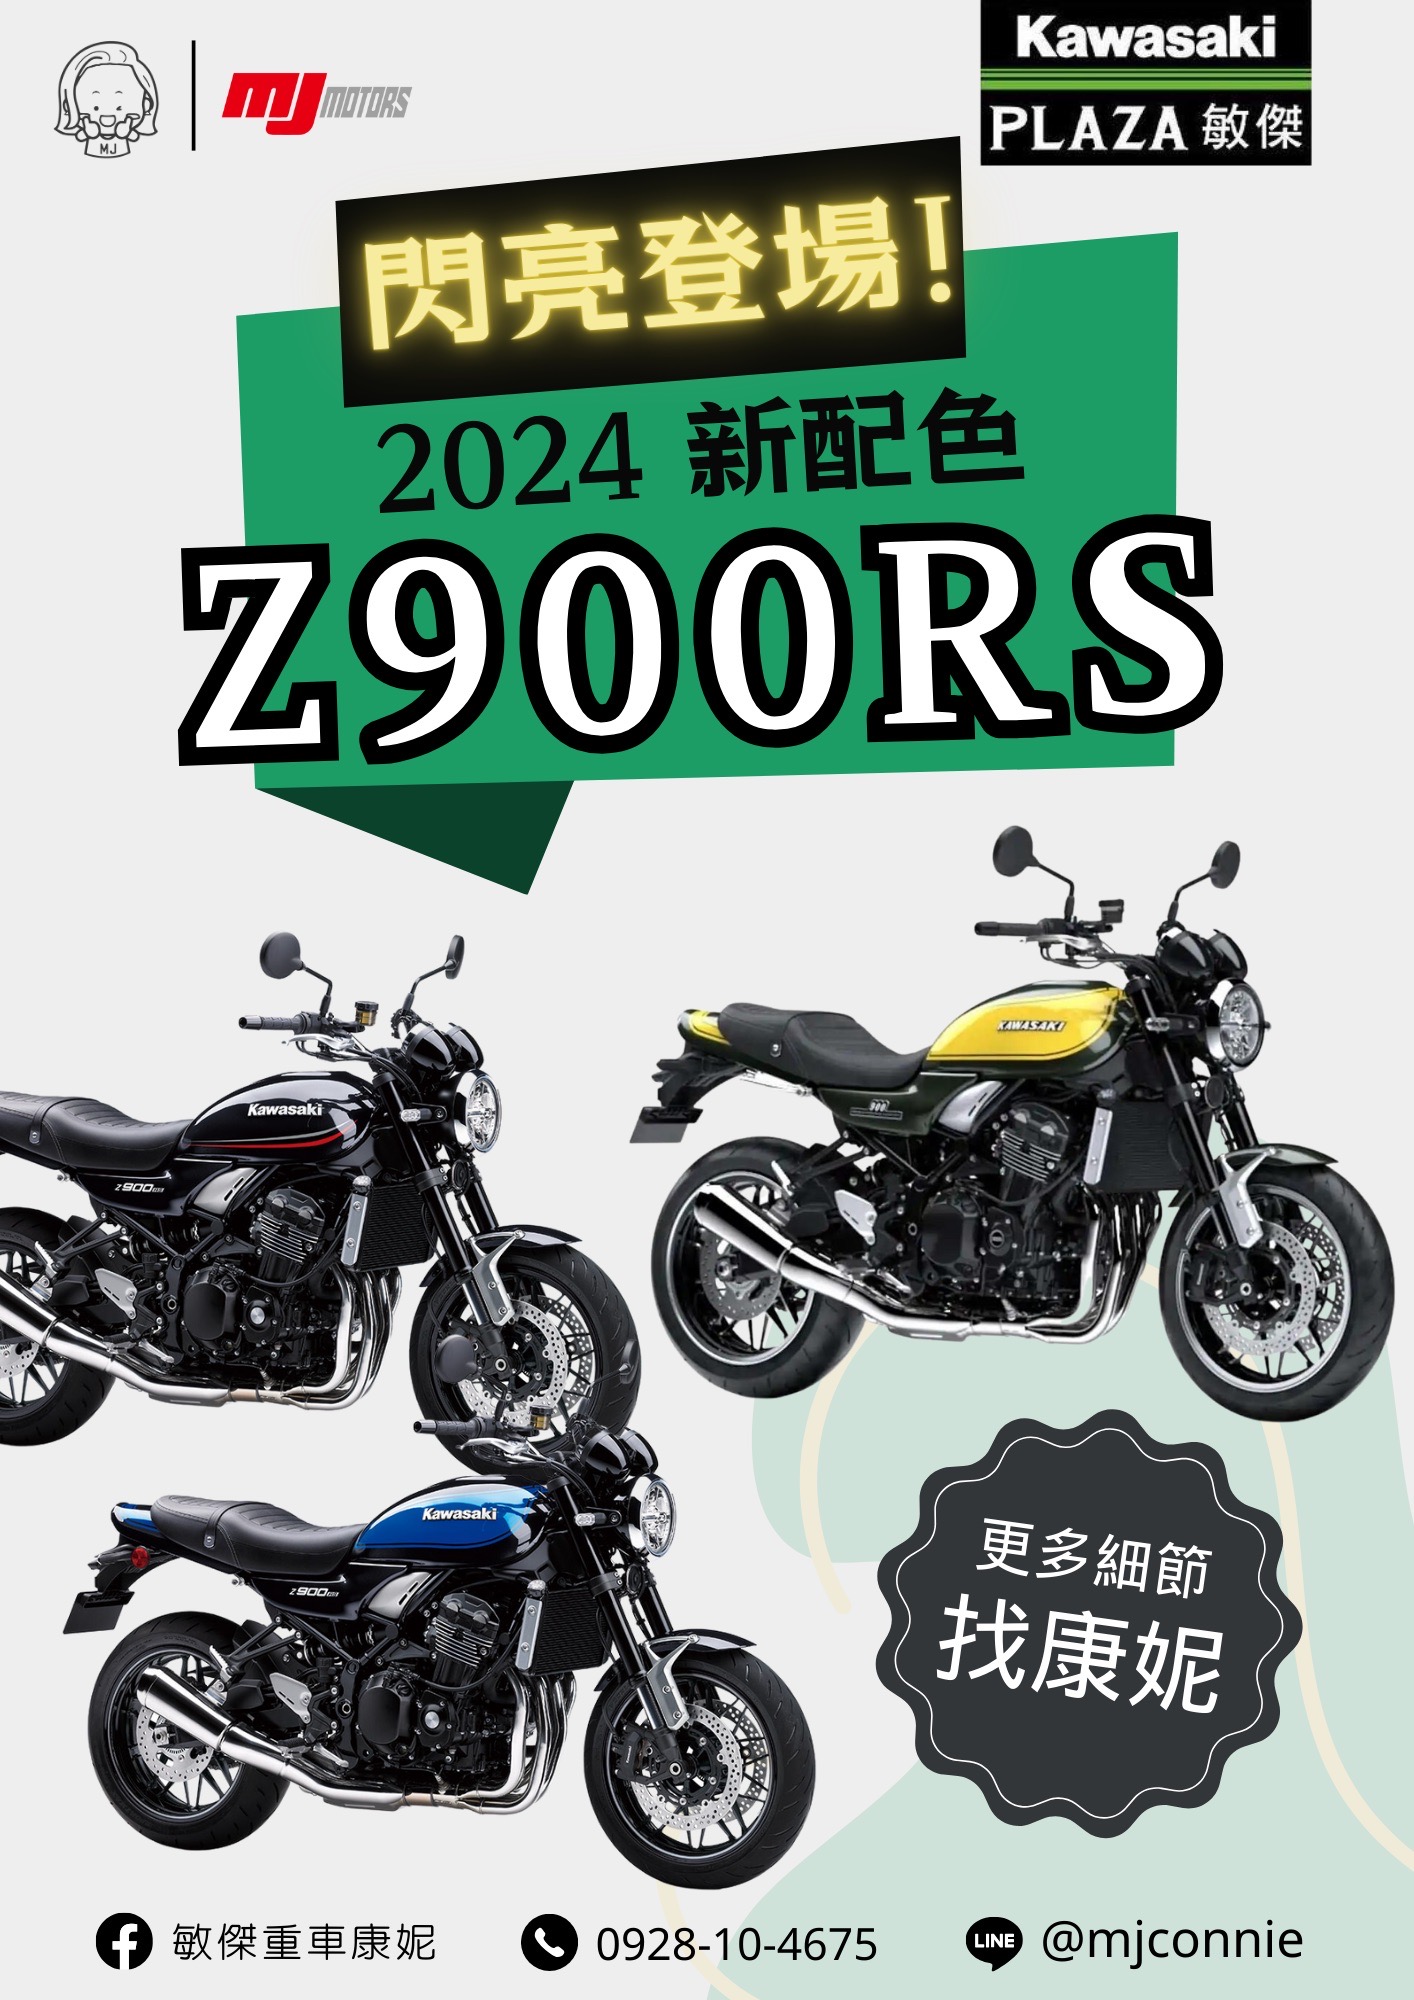 【敏傑車業資深銷售專員 康妮 Connie】KAWASAKI Z900RS - 「Webike-摩托車市」 『敏傑康妮』2024 Kawasaki Z900RS 全新配色 正式到店!! 大家都在等的配色來了!!! 絕對要入手收藏